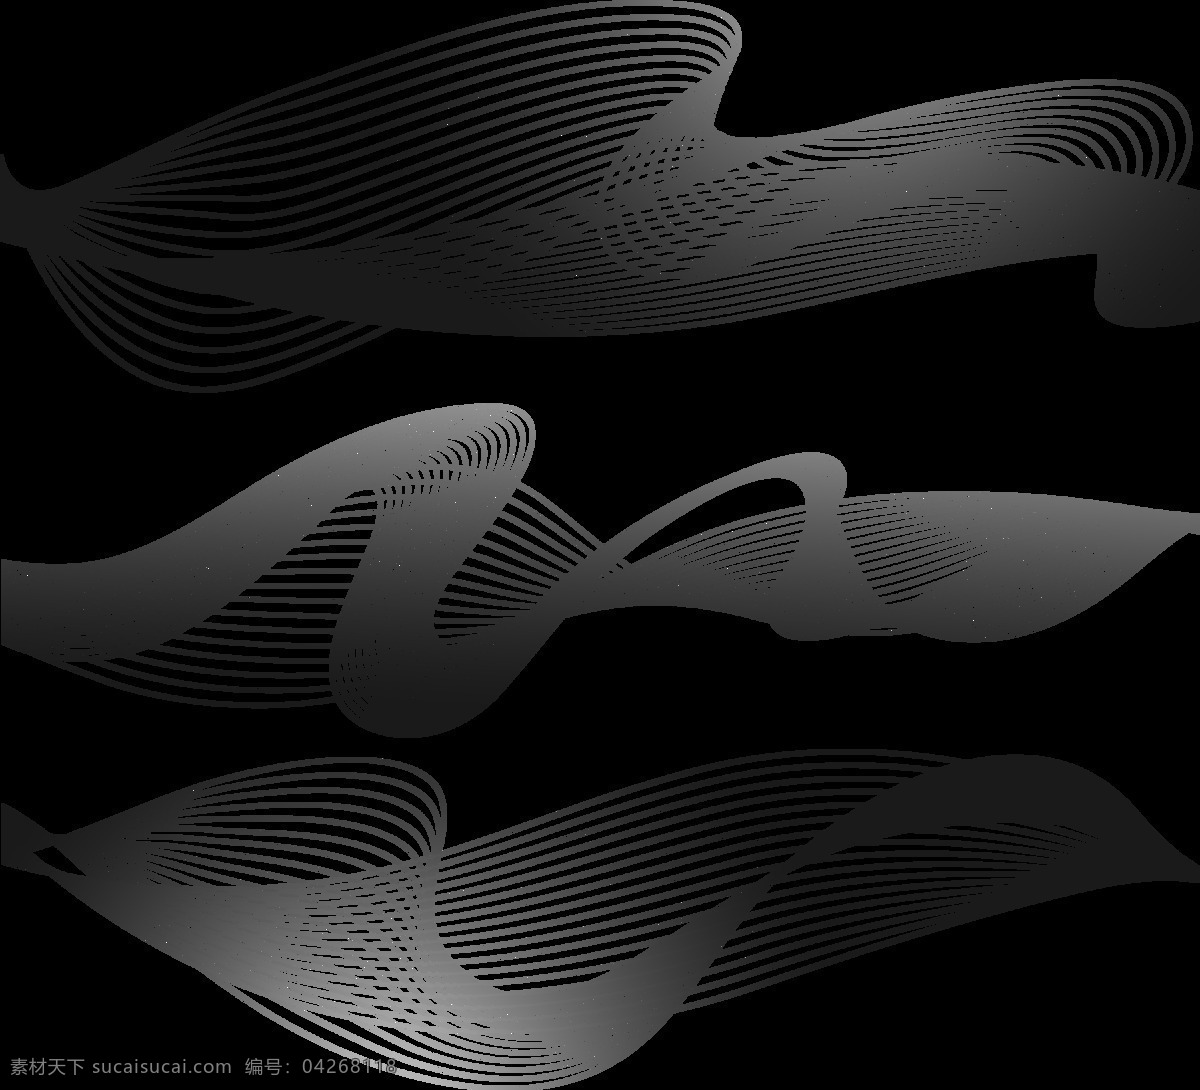 抽象 声波 图案 免 抠 透明 图 层 音乐声波 声音波 均衡器 曲线 音量 显示 背景 音乐素材 线条 声波图形 声音波形 声波素材 音波线条 素材声音 音乐符号